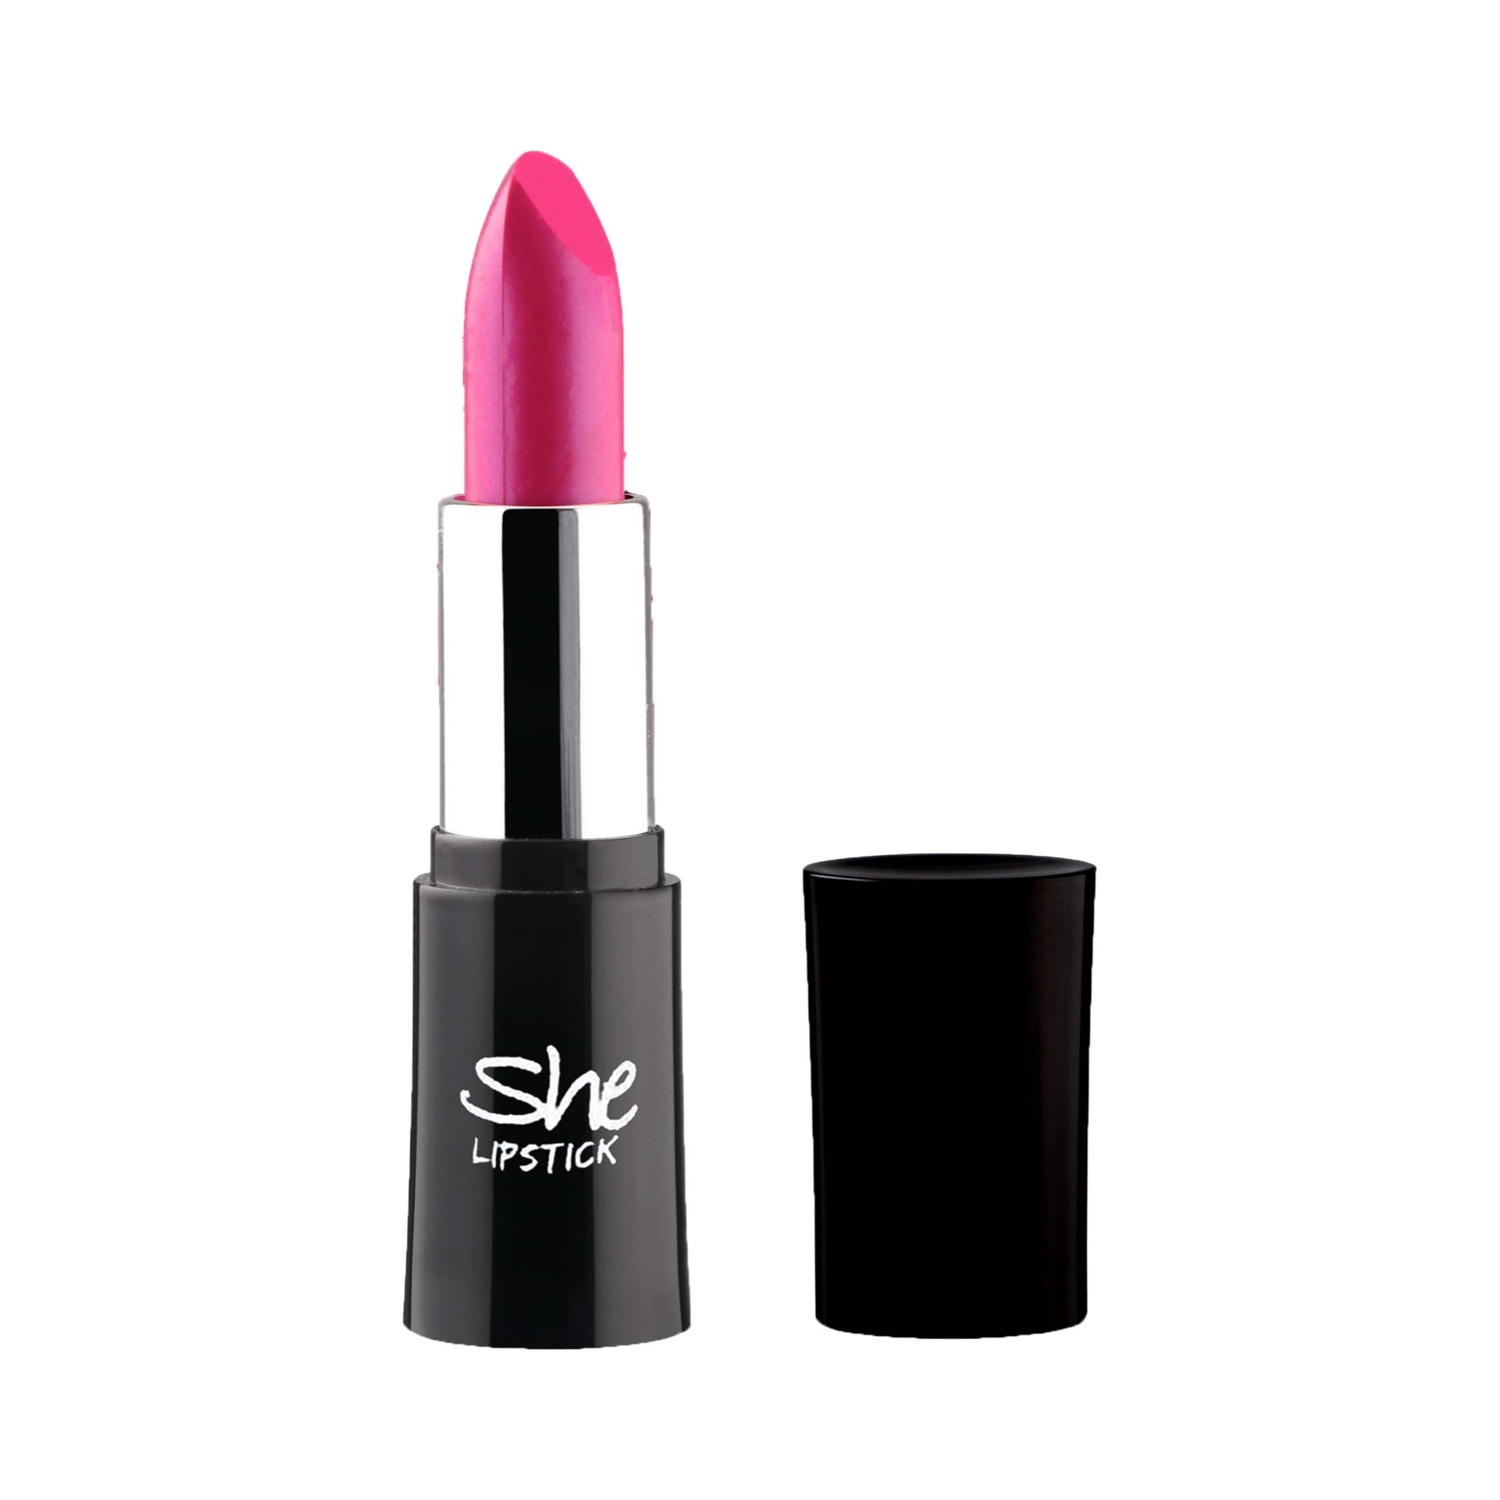 She | She Makeup Lipstick - 06 Blush Pink (4.5g)